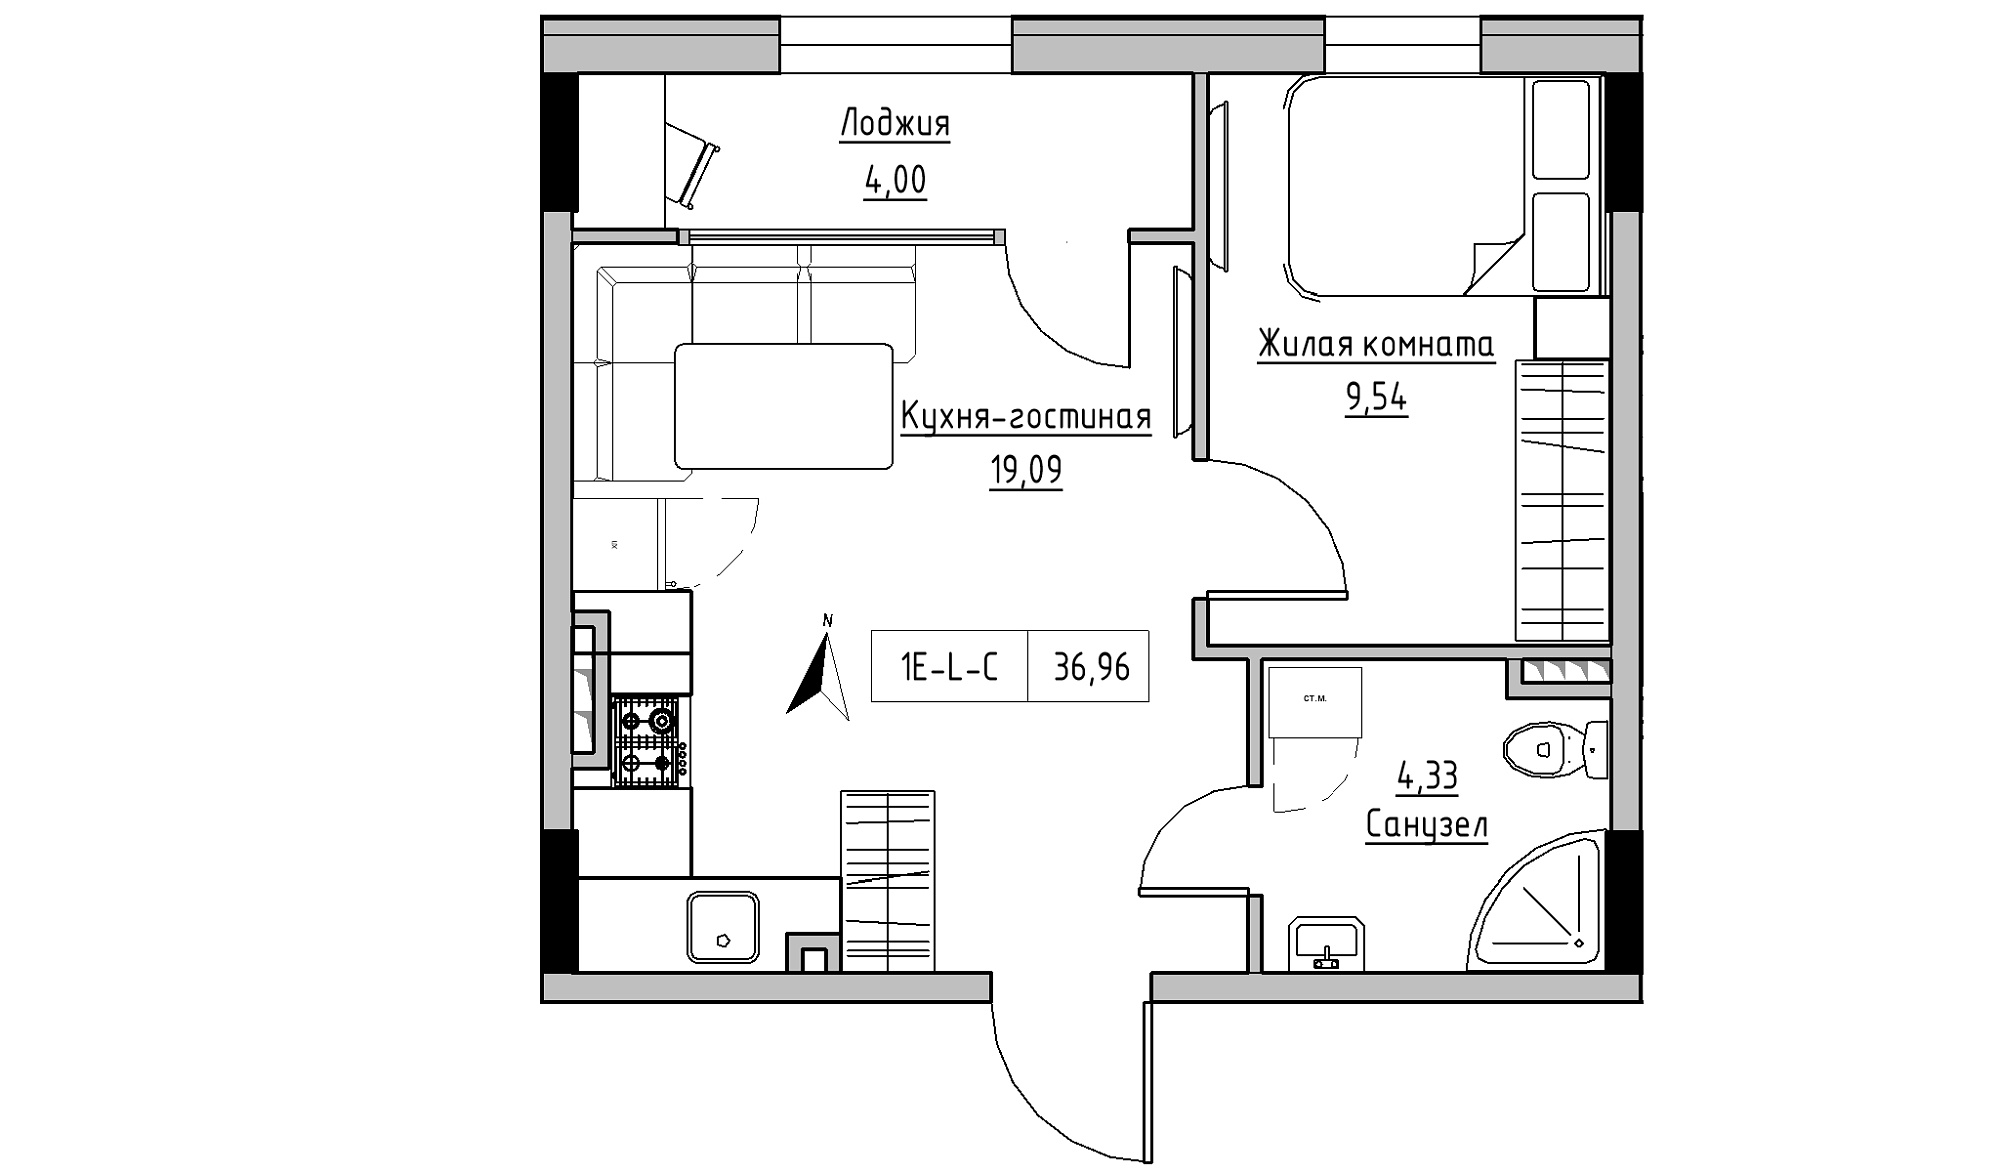 Планування 1-к квартира площею 36.96м2, KS-025-03/0008.